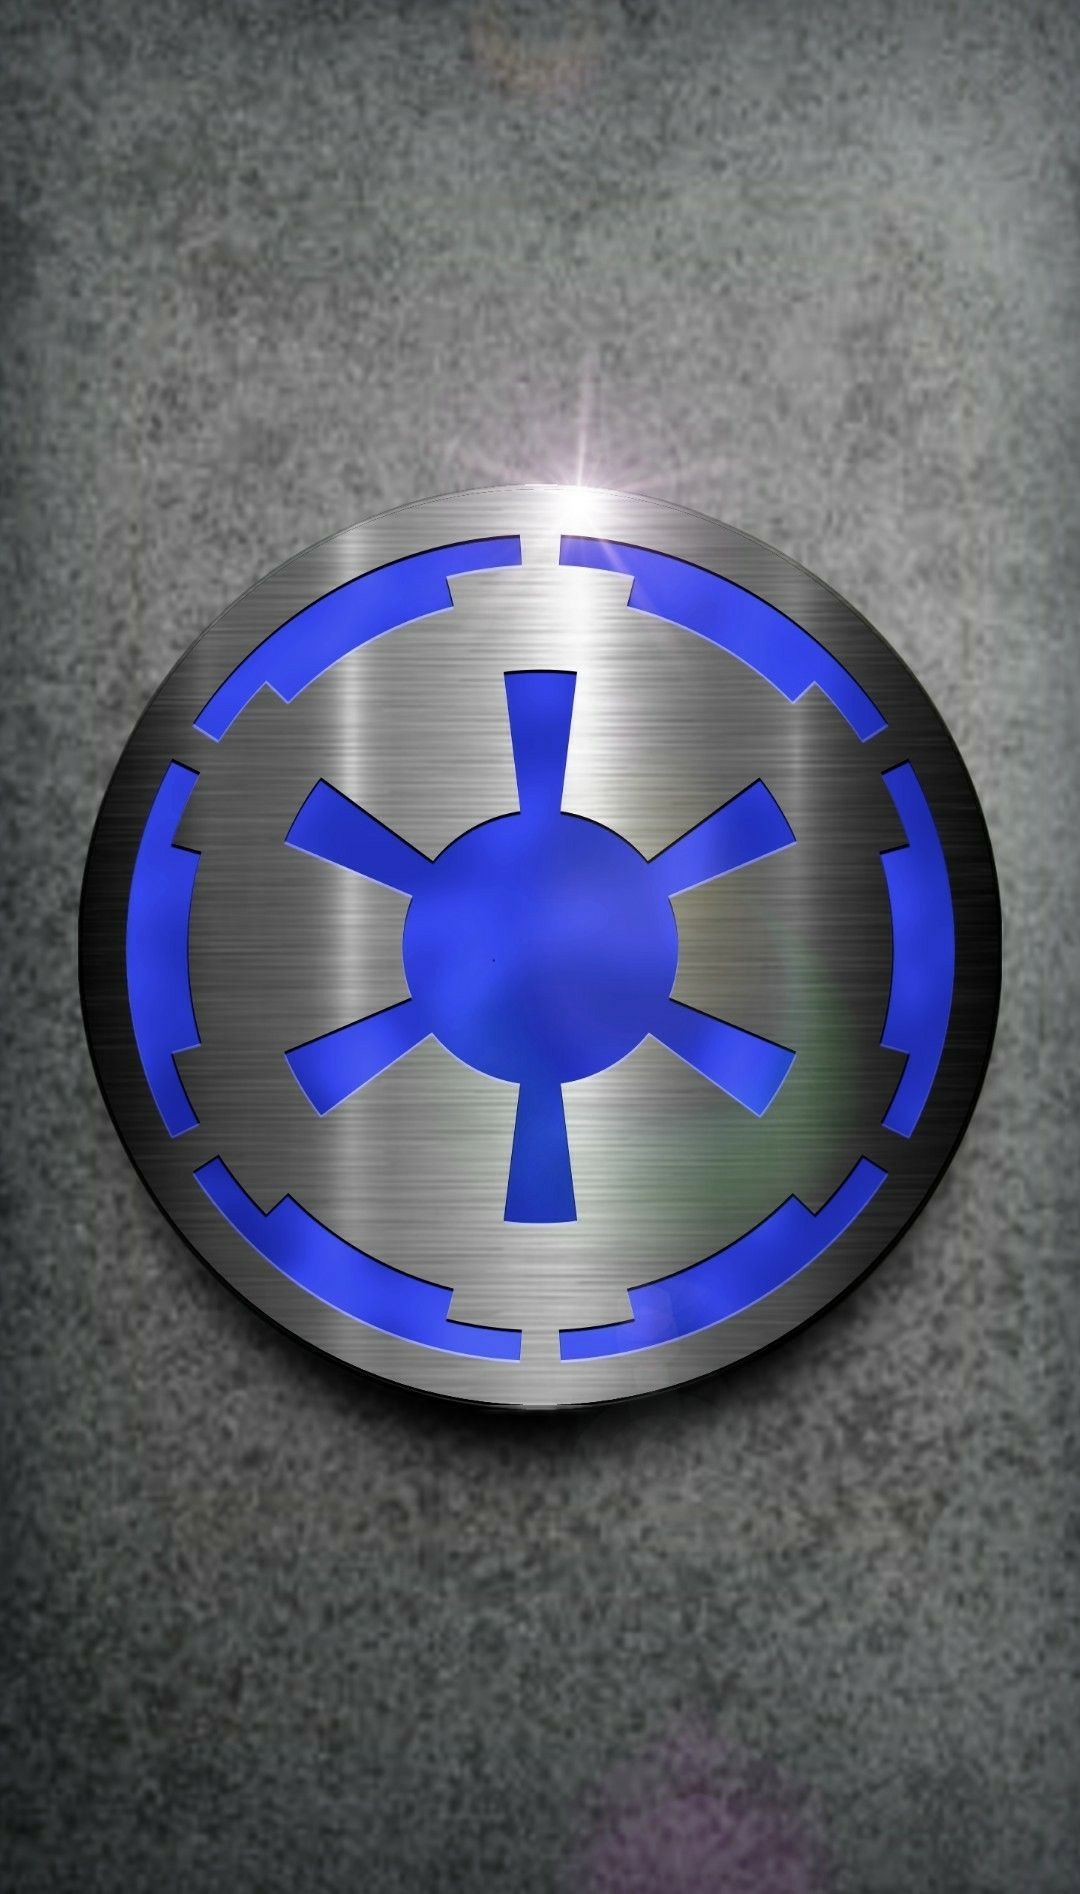 Star Wars Empire Logo Wallpaper. Star wars background, Star wars empire, Star wars empire logo